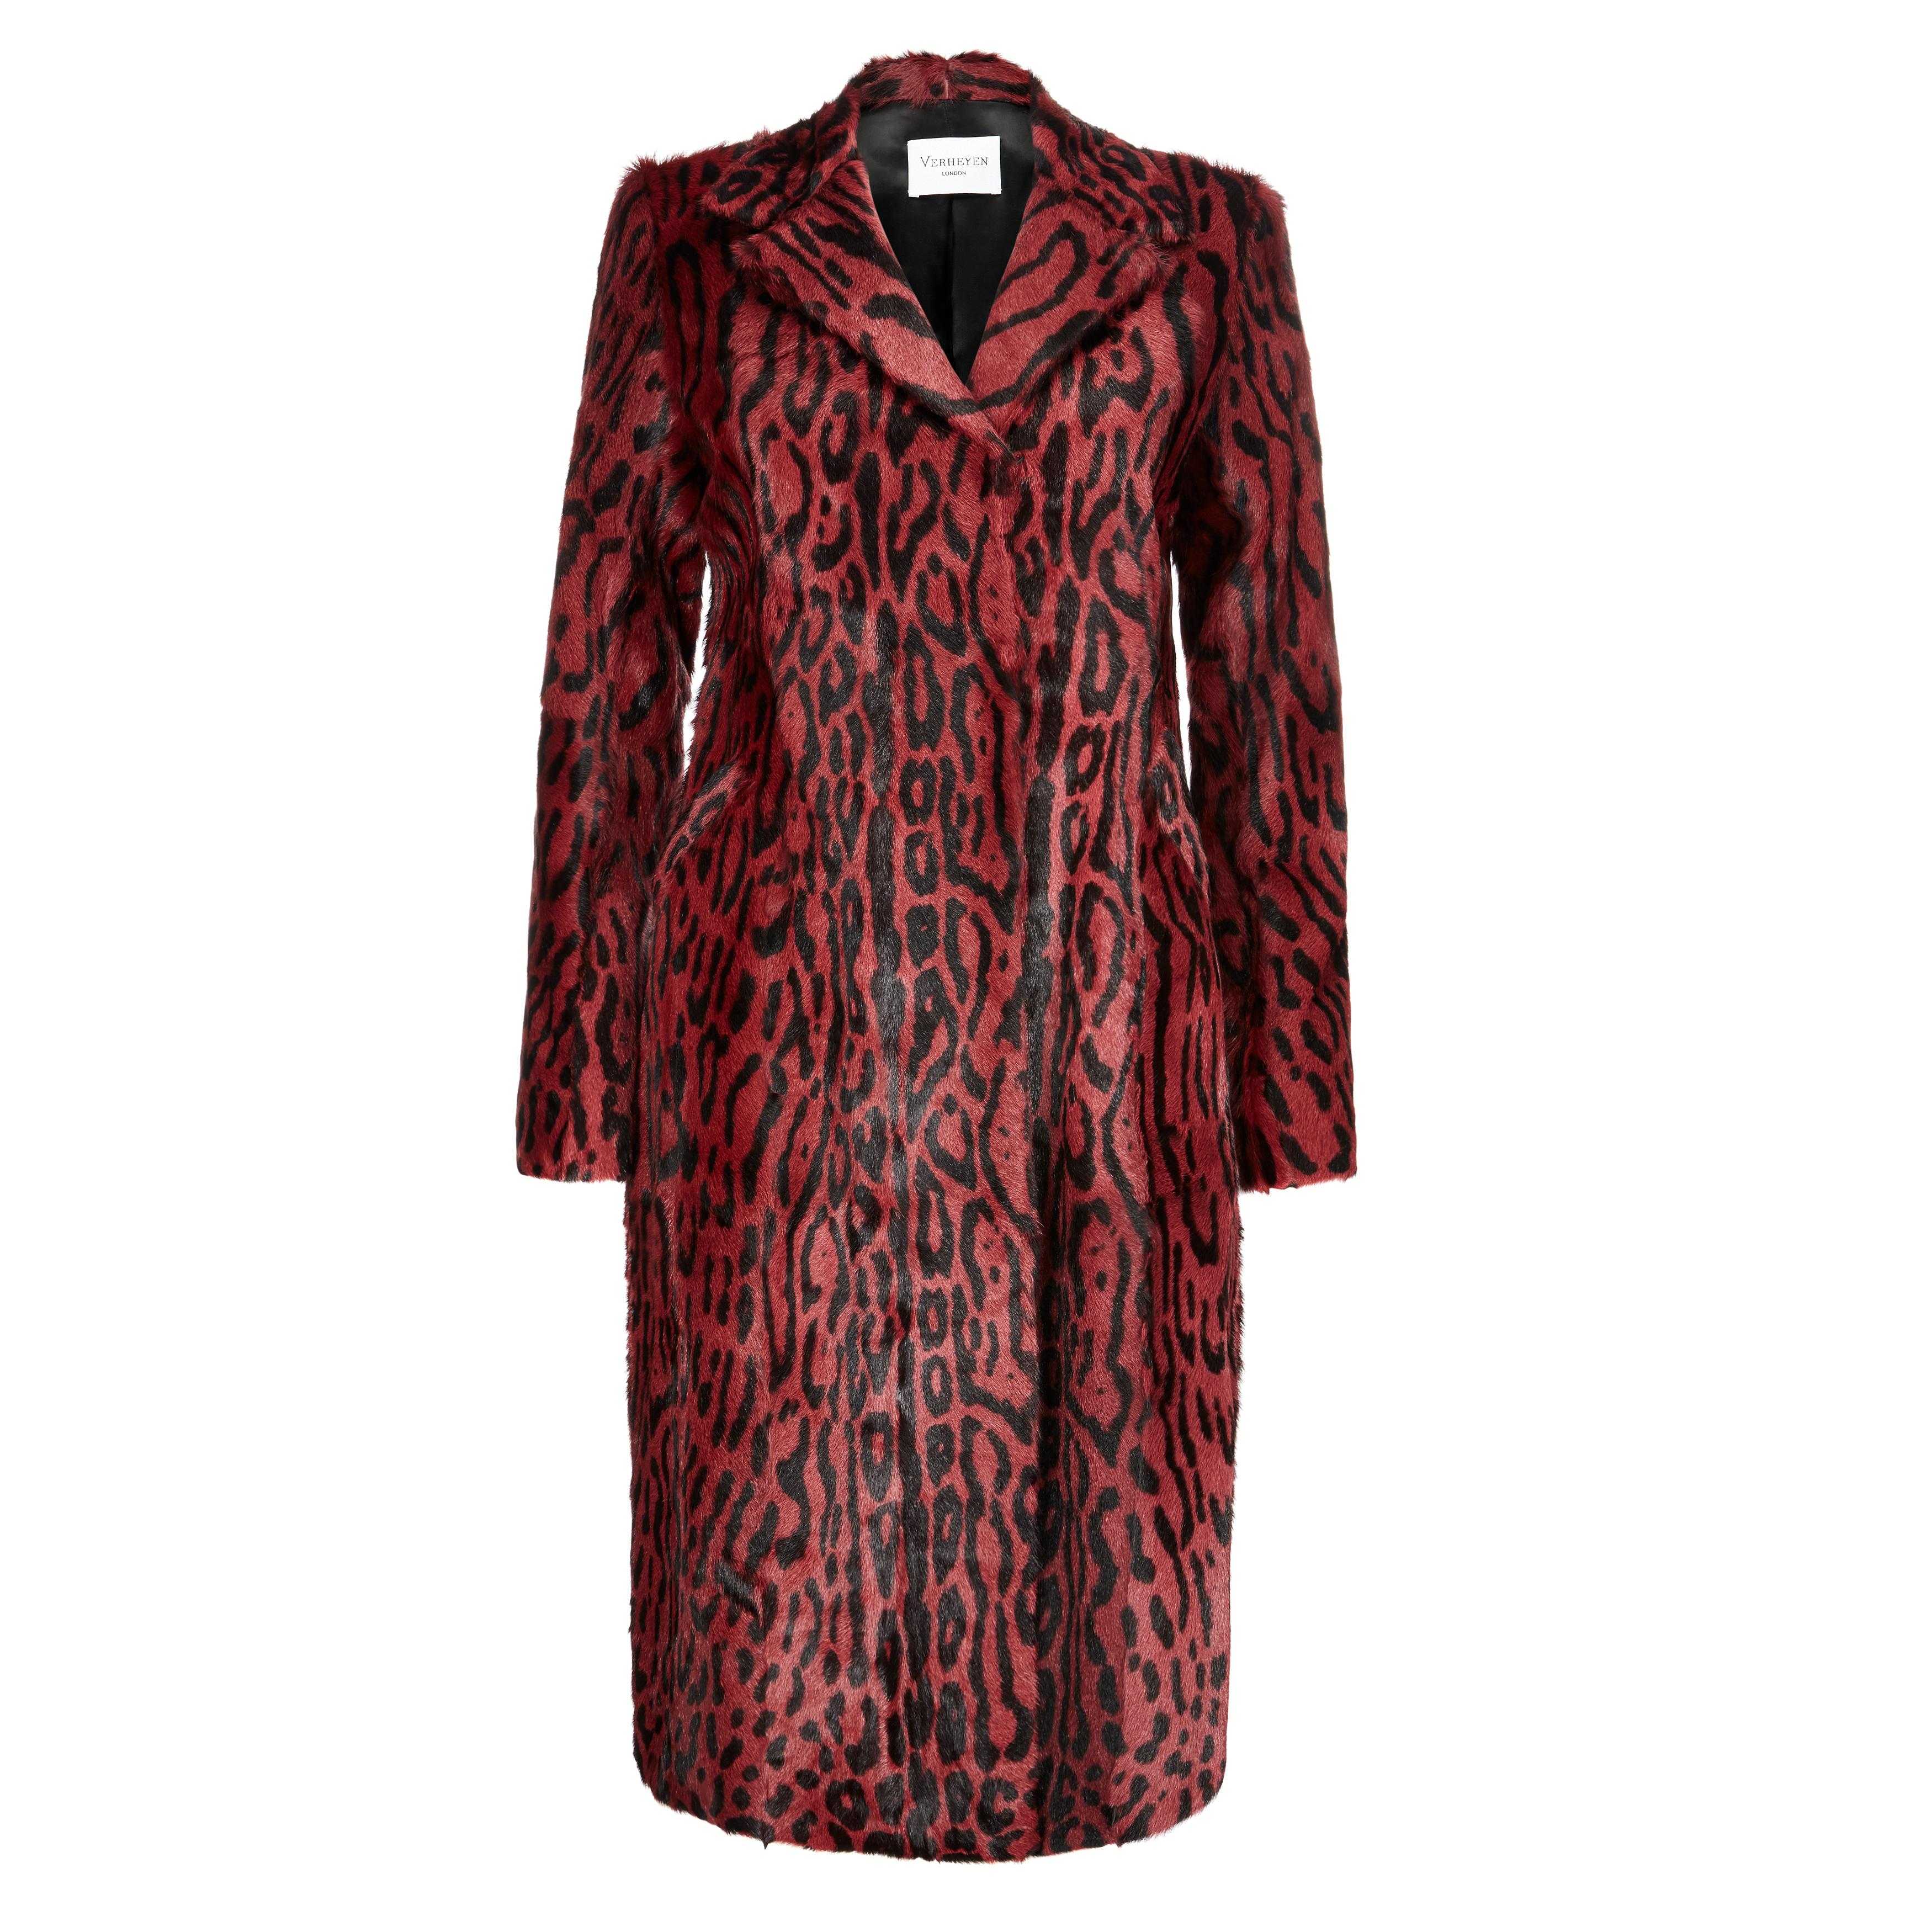 Verheyen London Longline Leopard Print Coat in Ruby Red Goat Hair Fur